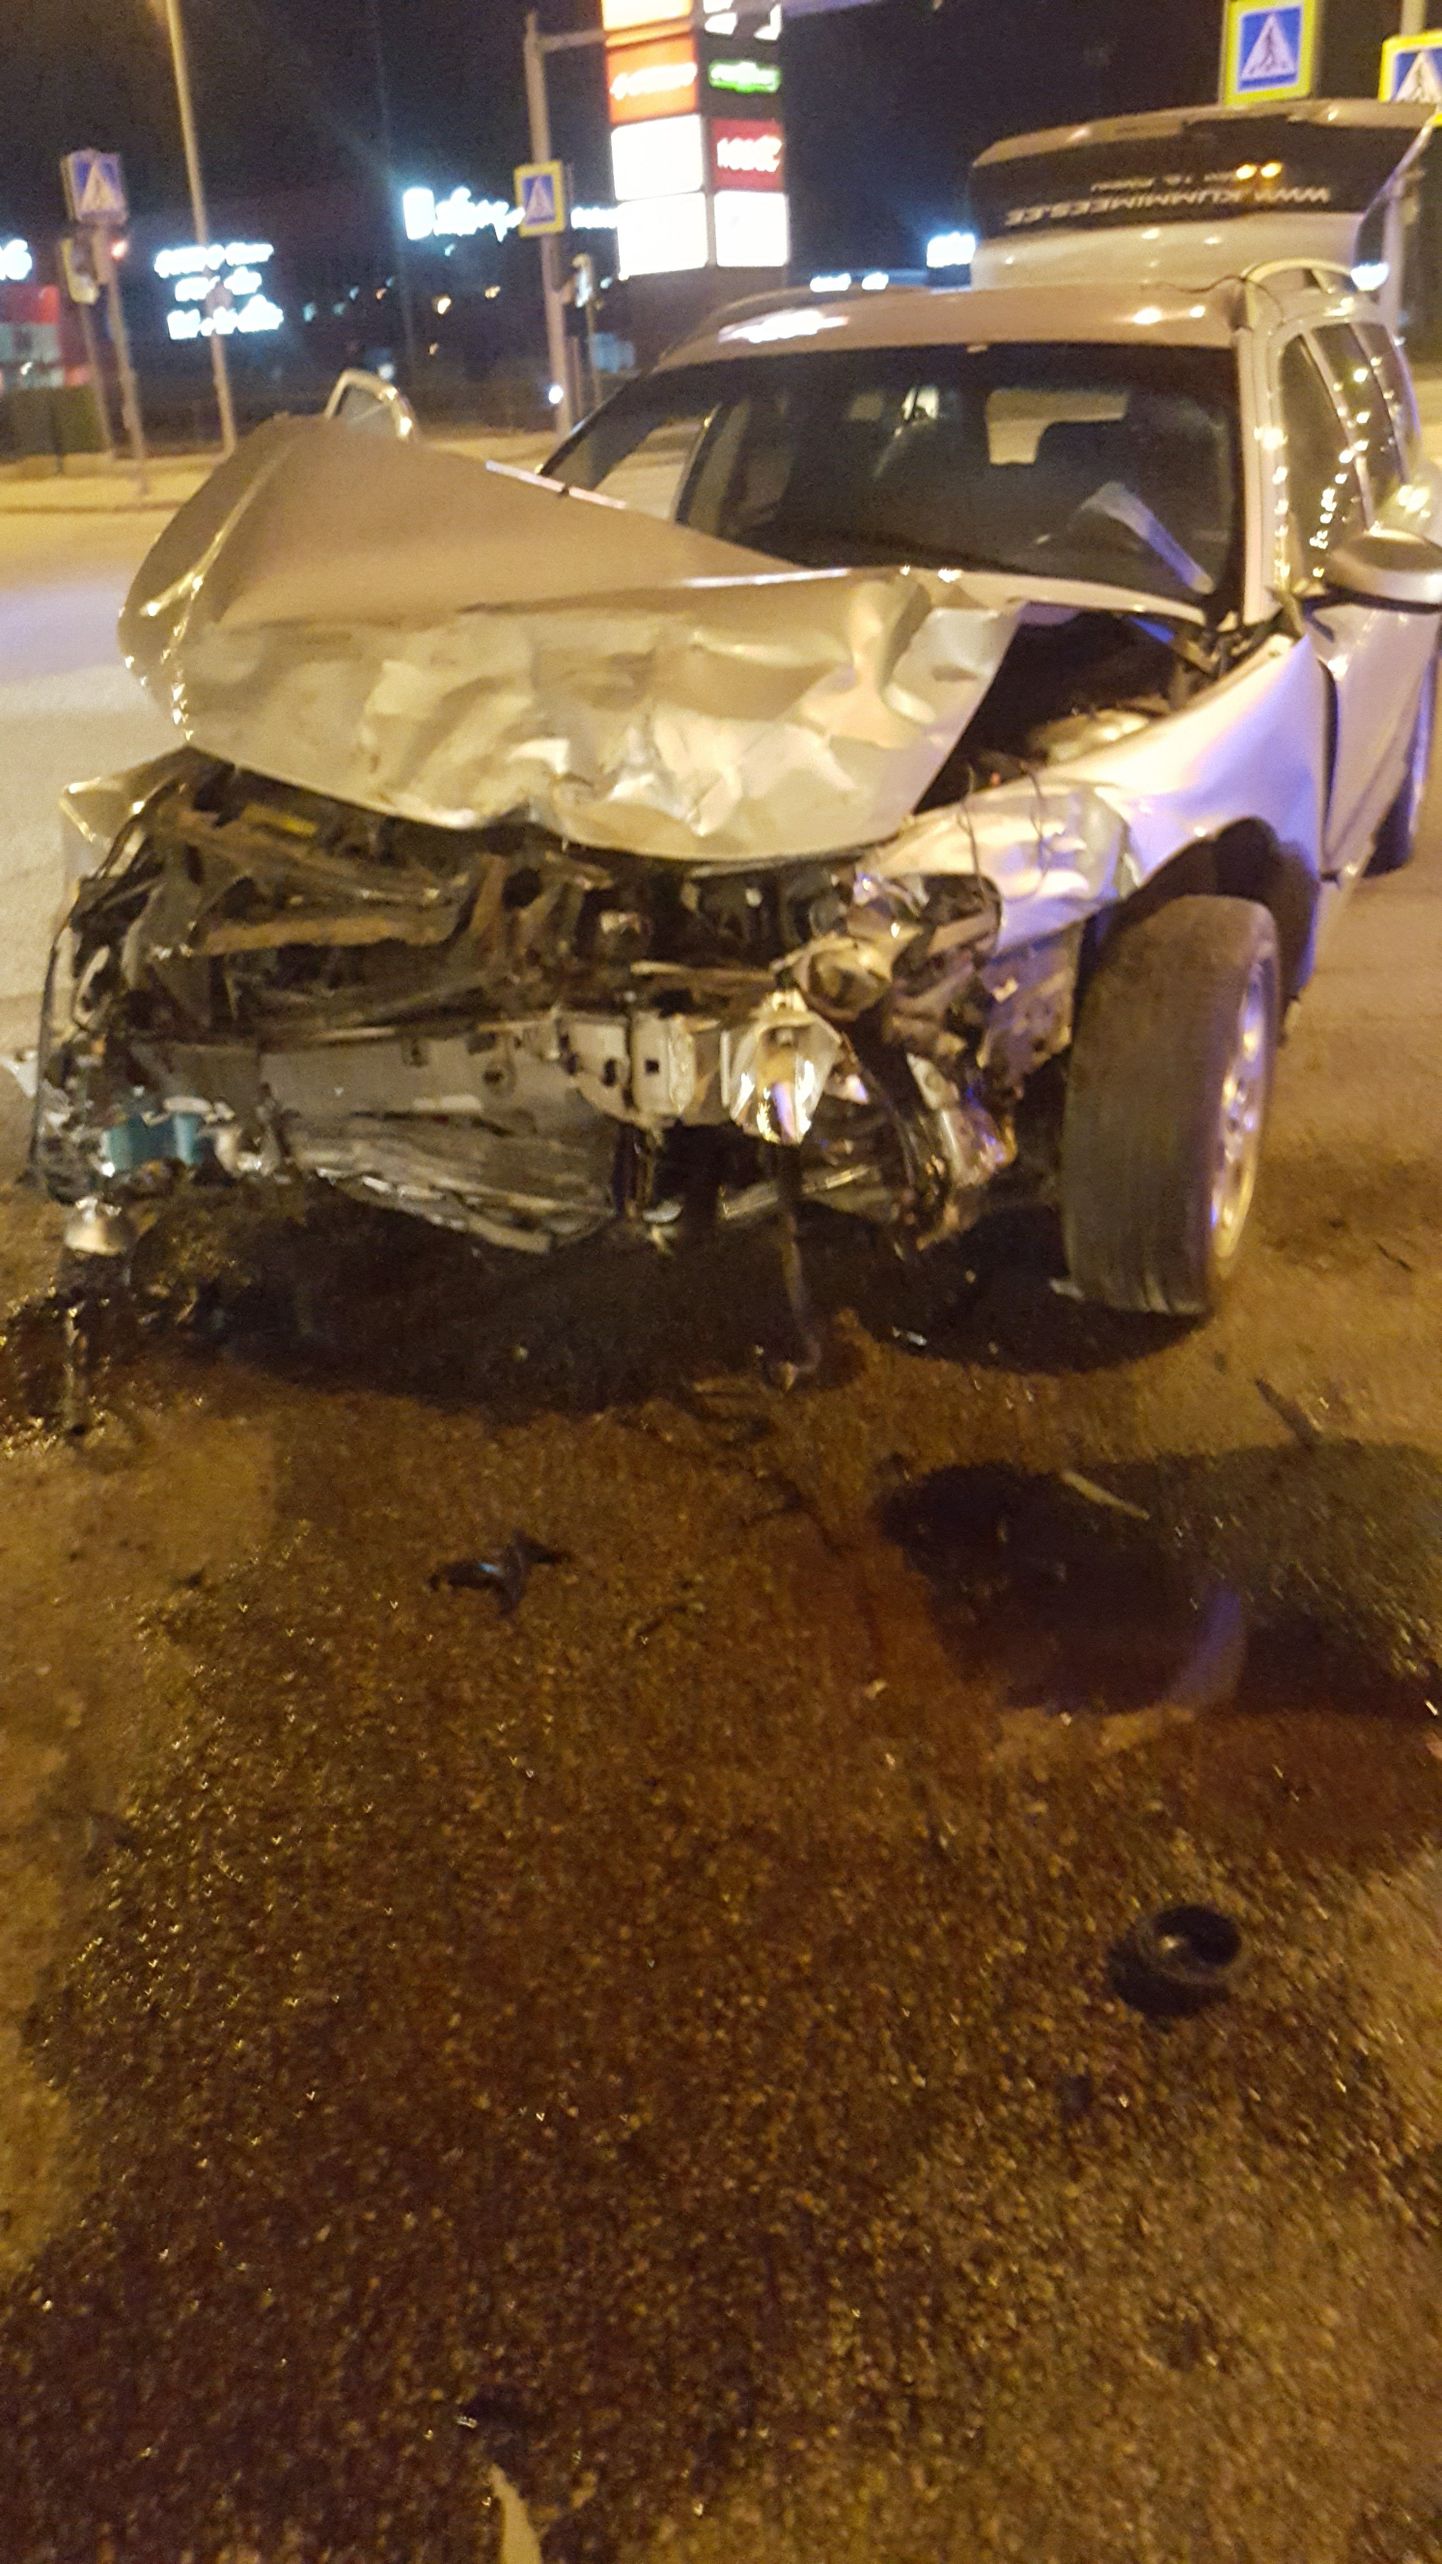 Joobes juht põhjustas 1. mai öösel kella 2.40 paiku Pärnus Papiniidu tänava ja Riia maantee ristmikul liiklusõnnetuse, sõites ette peateel liikunud taksole.